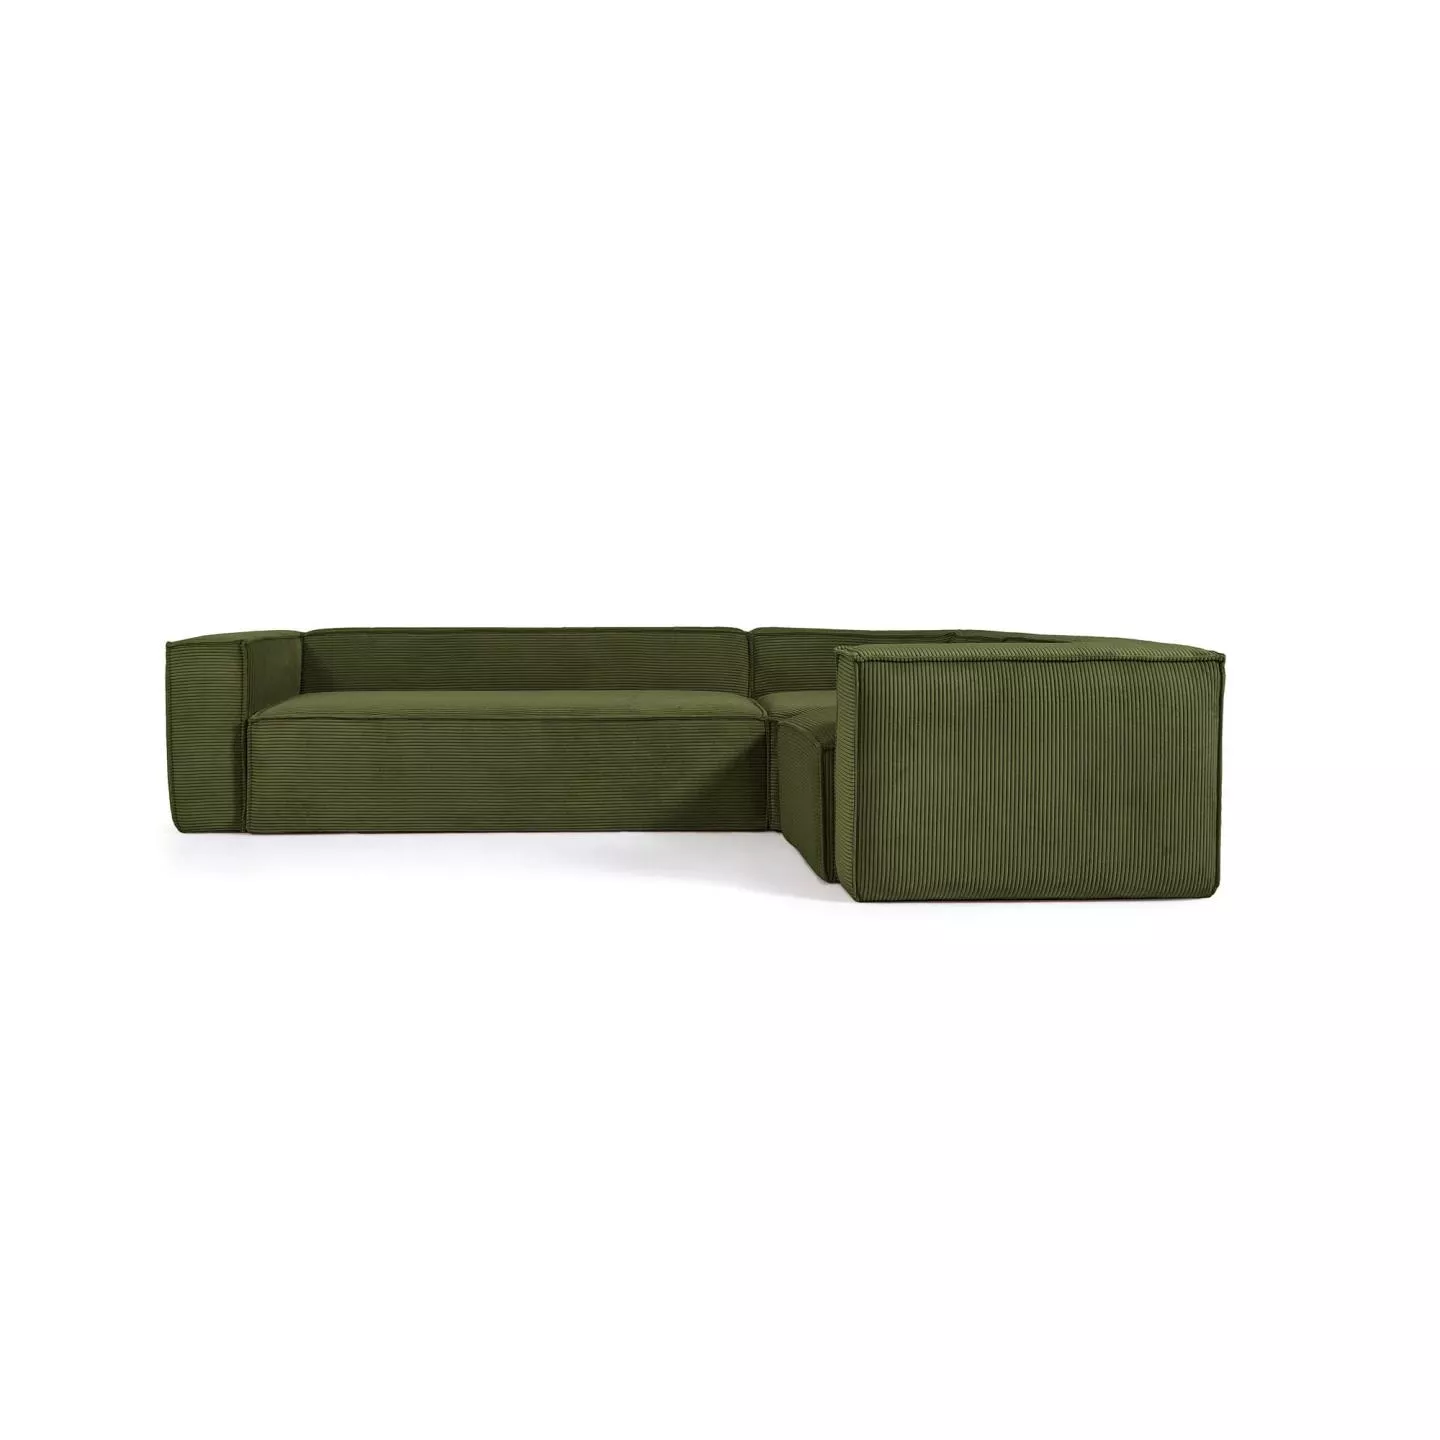 Угловой 5-местный диван La Forma Blok из плотного вельвета зеленого цвета 320 х 230 см